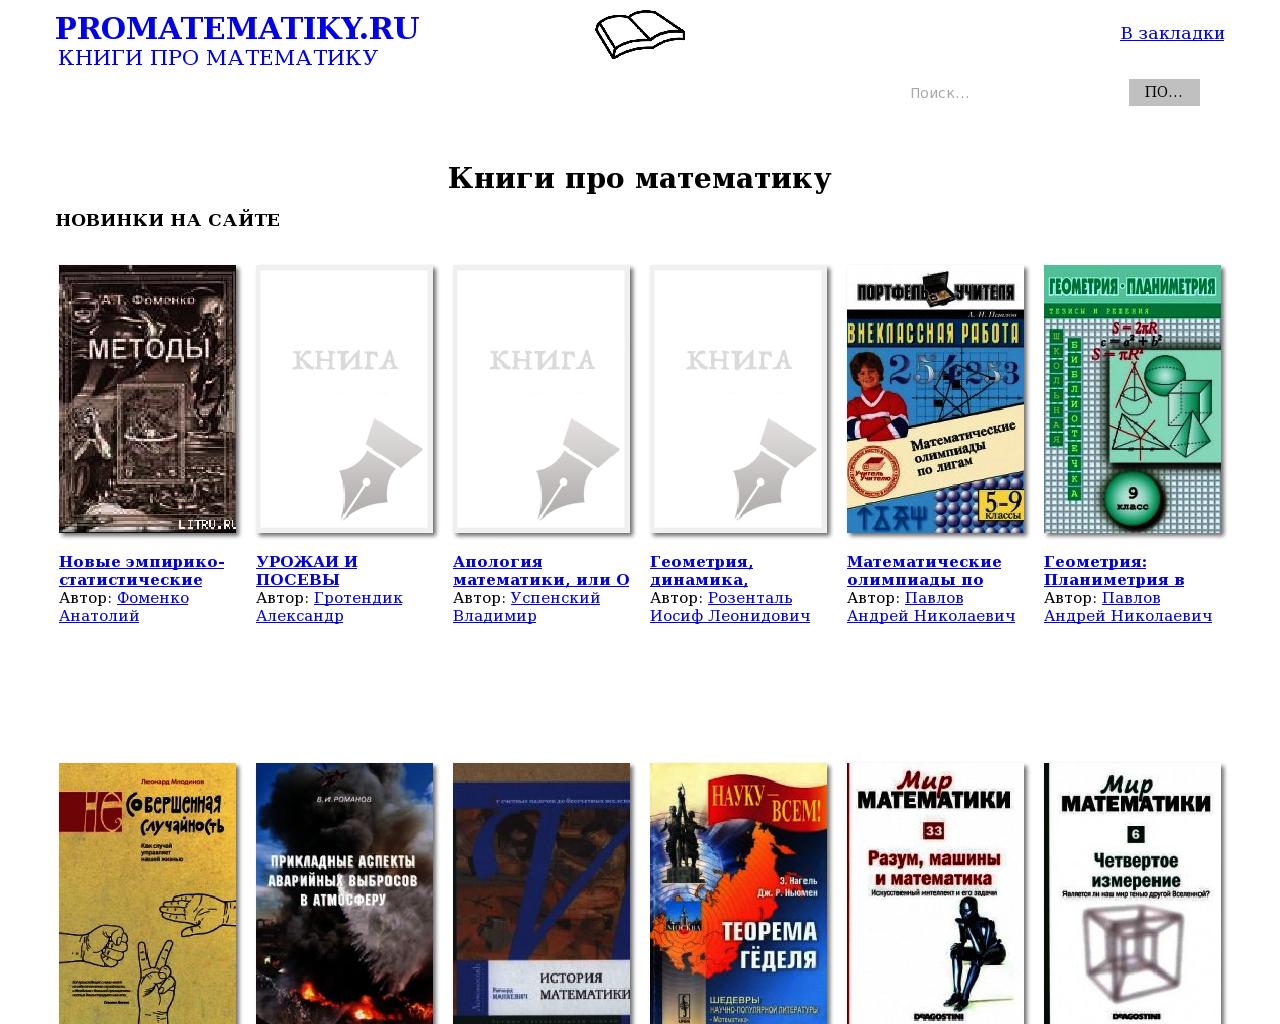 Изображение сайта promatematiky.ru в разрешении 1280x1024